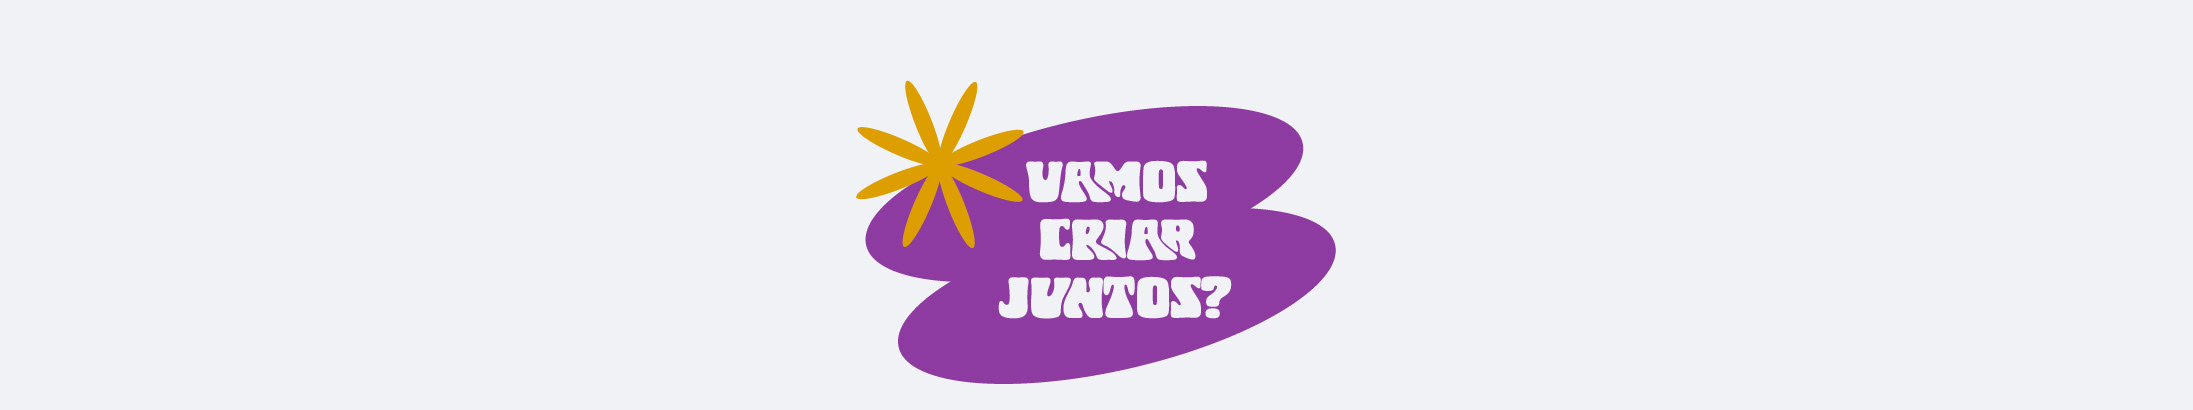 Vetoriza Comunicação's profile banner